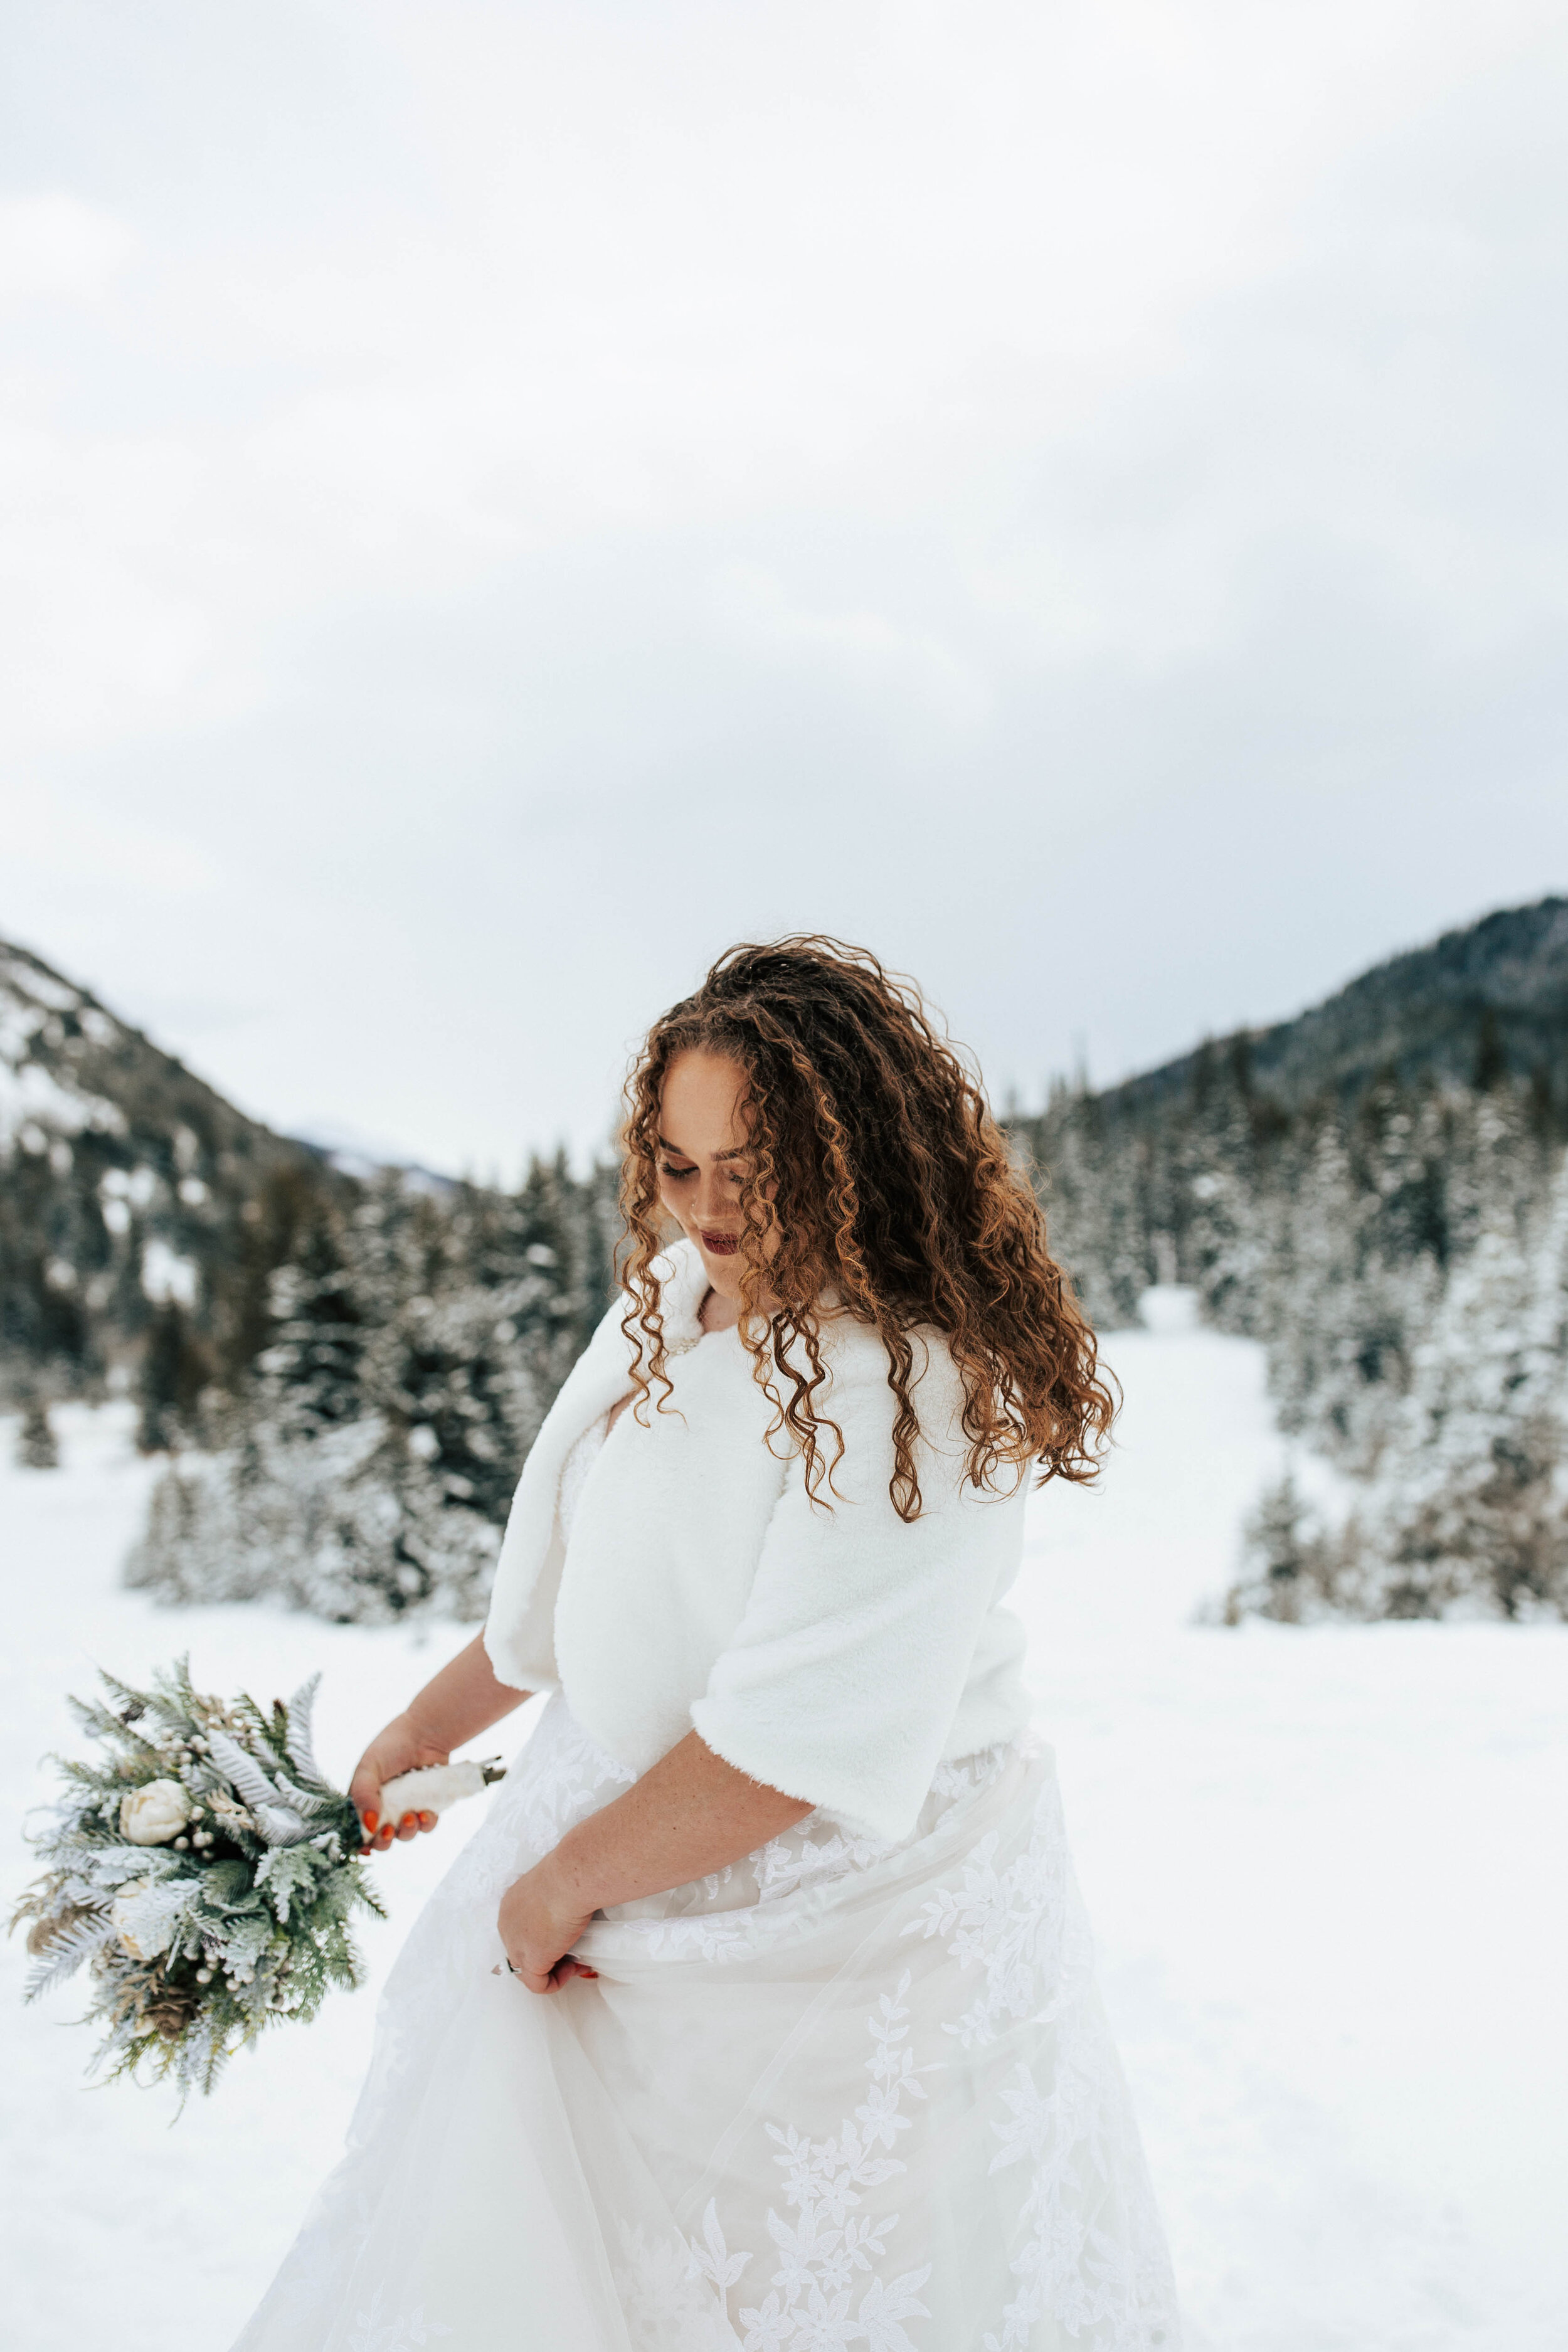 Snowy mountain winter bridals long curly hair big eyes blue florals wedding dress bride #utahphotographer #weddingphotographer #bride #bridals wedding dress flax fur shawl